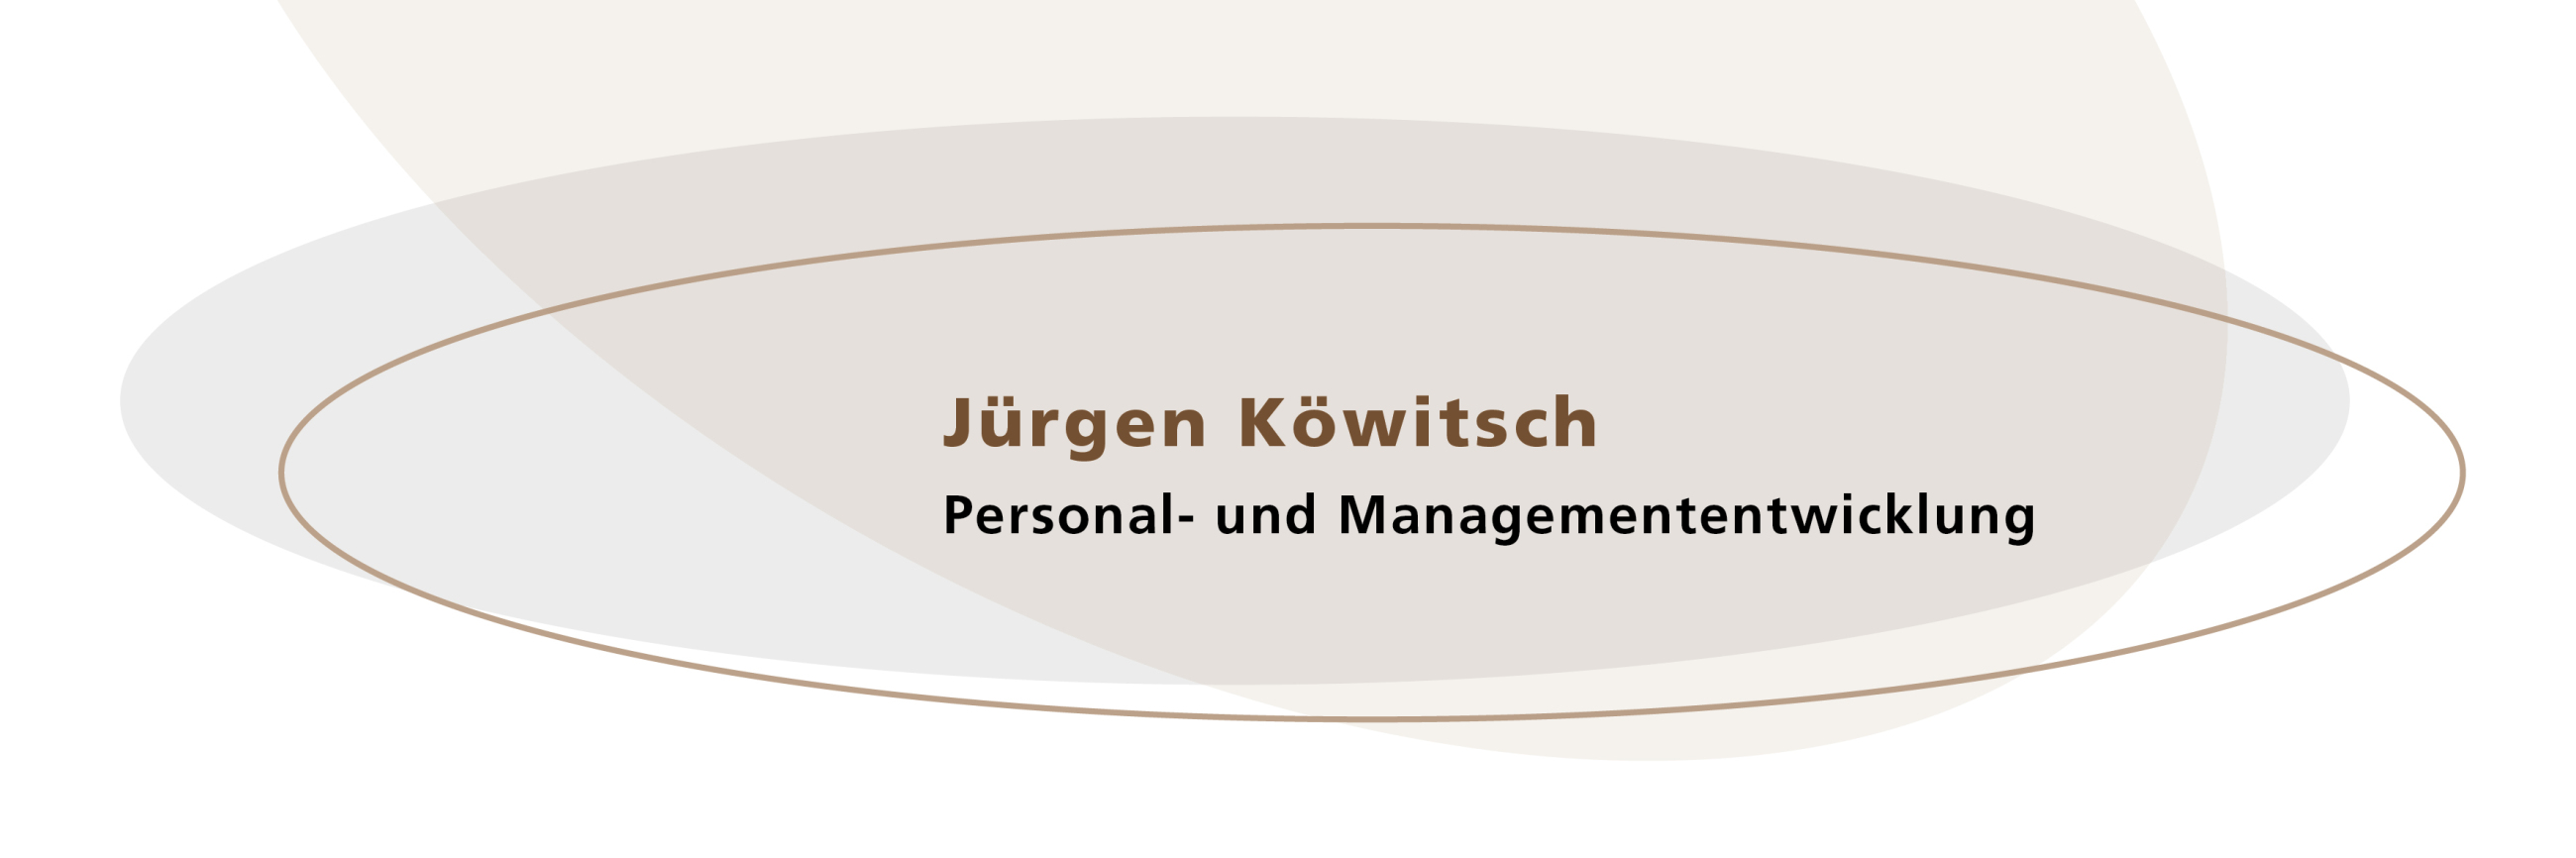 Jürgen Köwitsch Personal- und Managemententwicklung